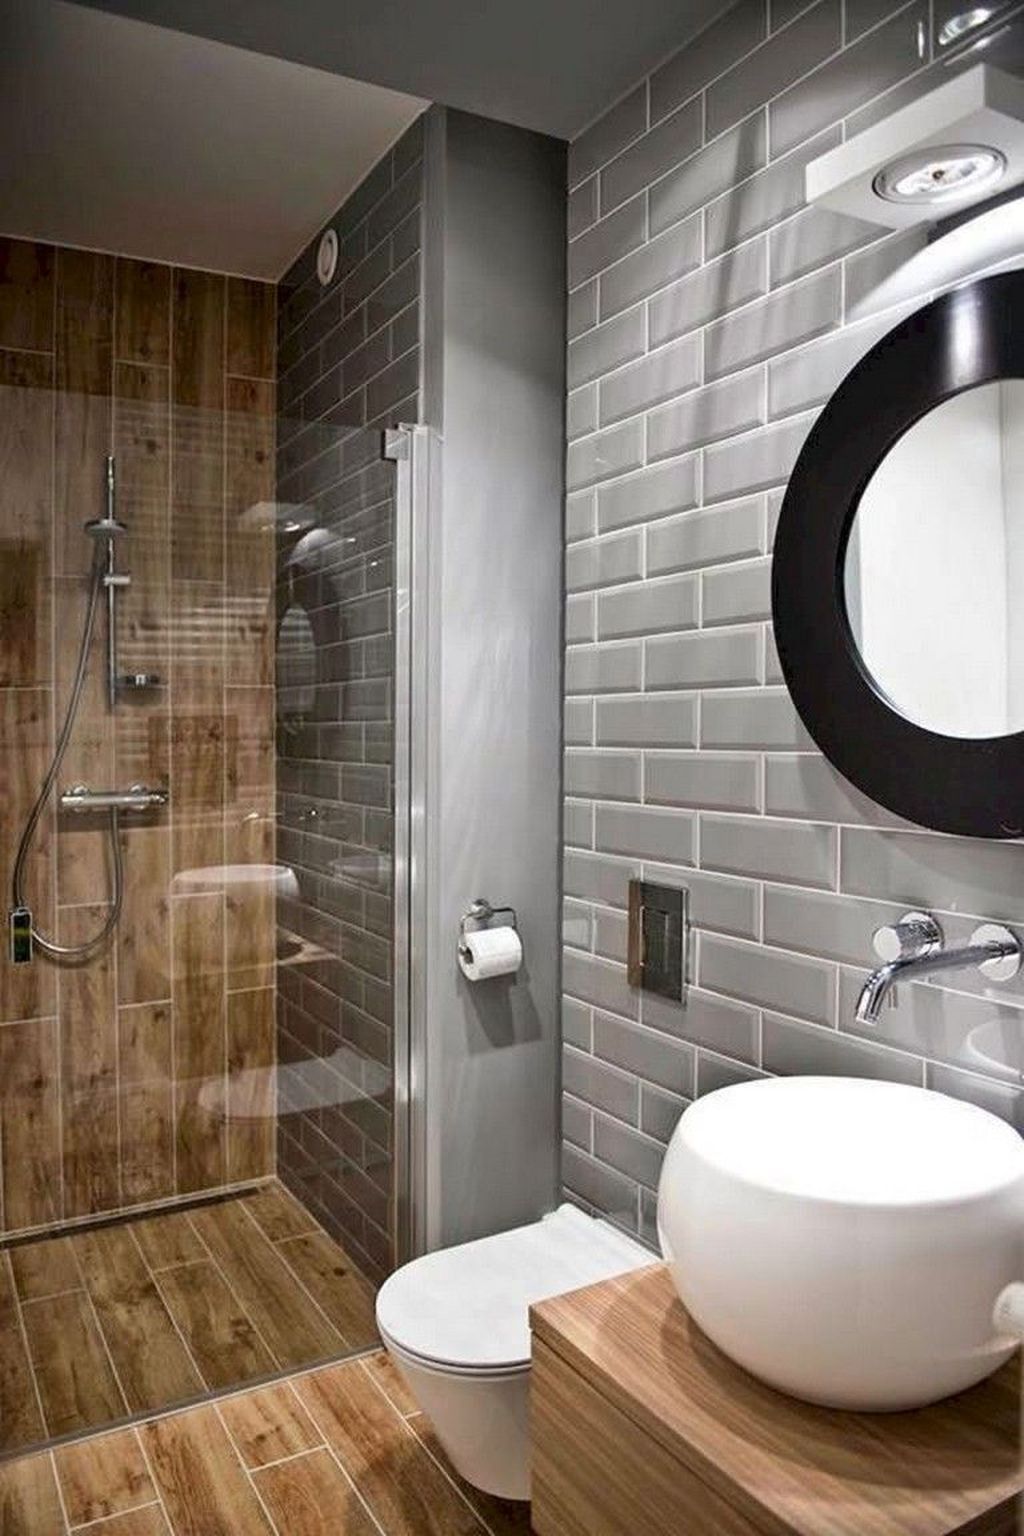 salle de bain bois clair peinture grise effet briques